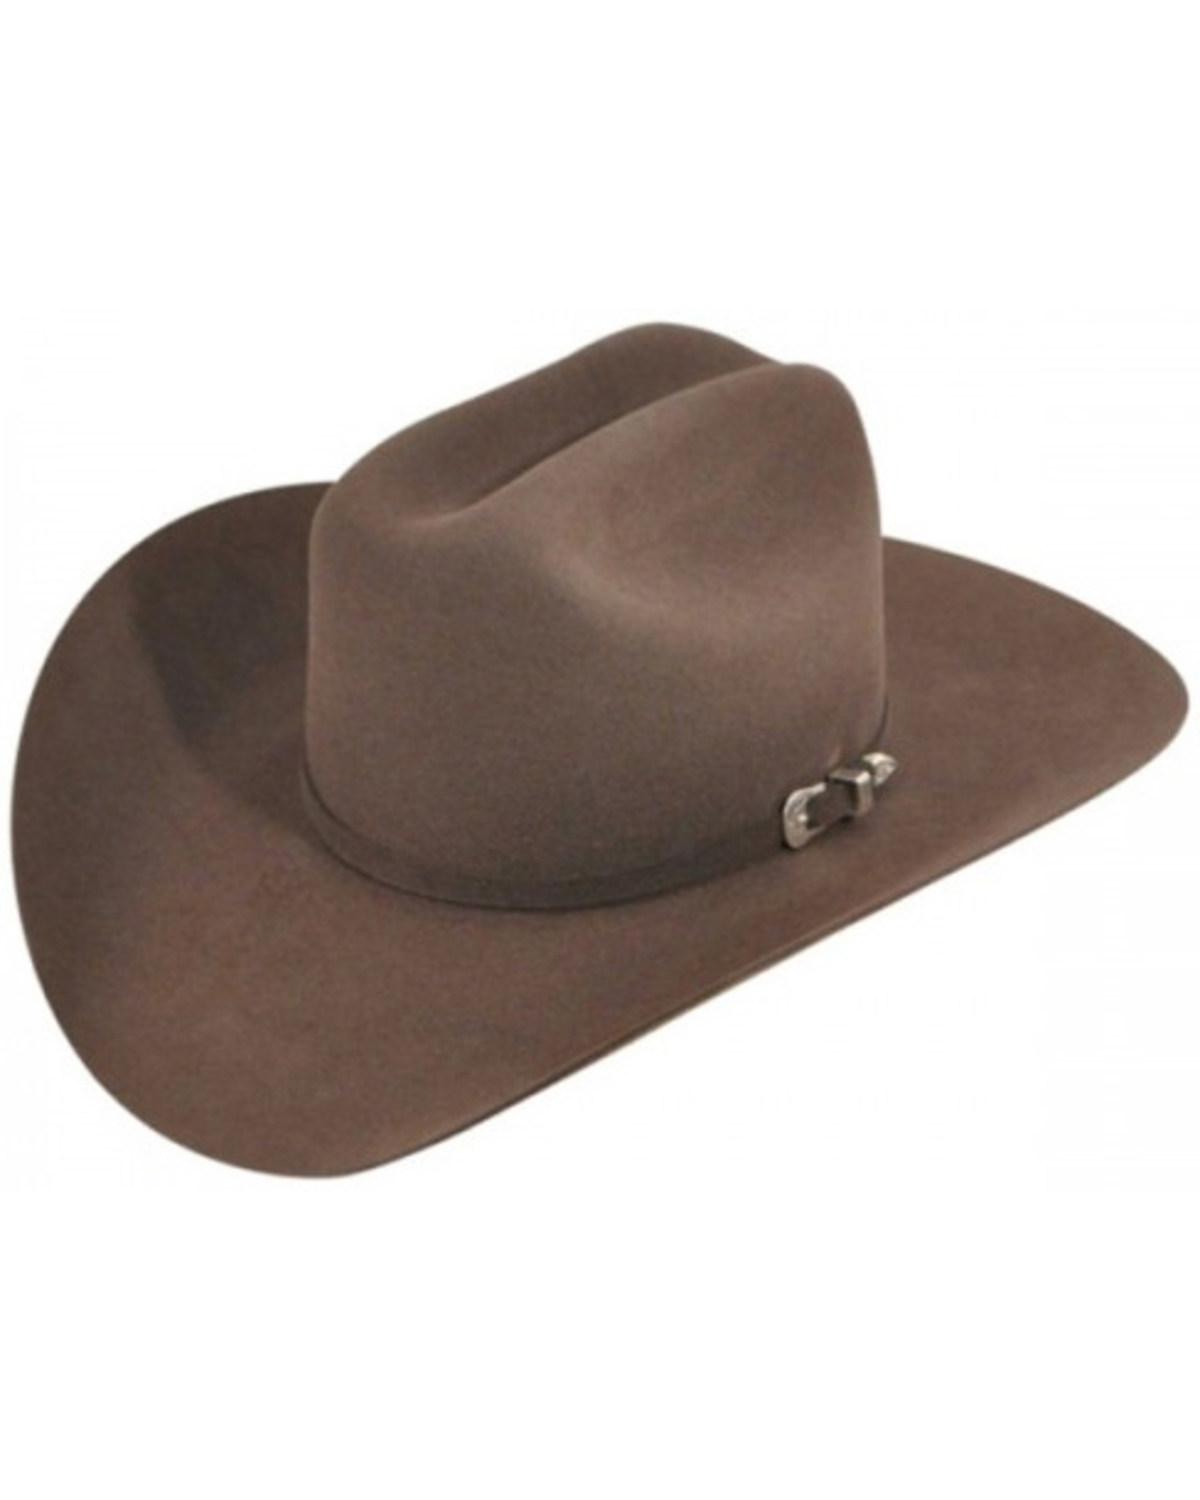 Bailey Pro 5X Felt Cowboy Hat